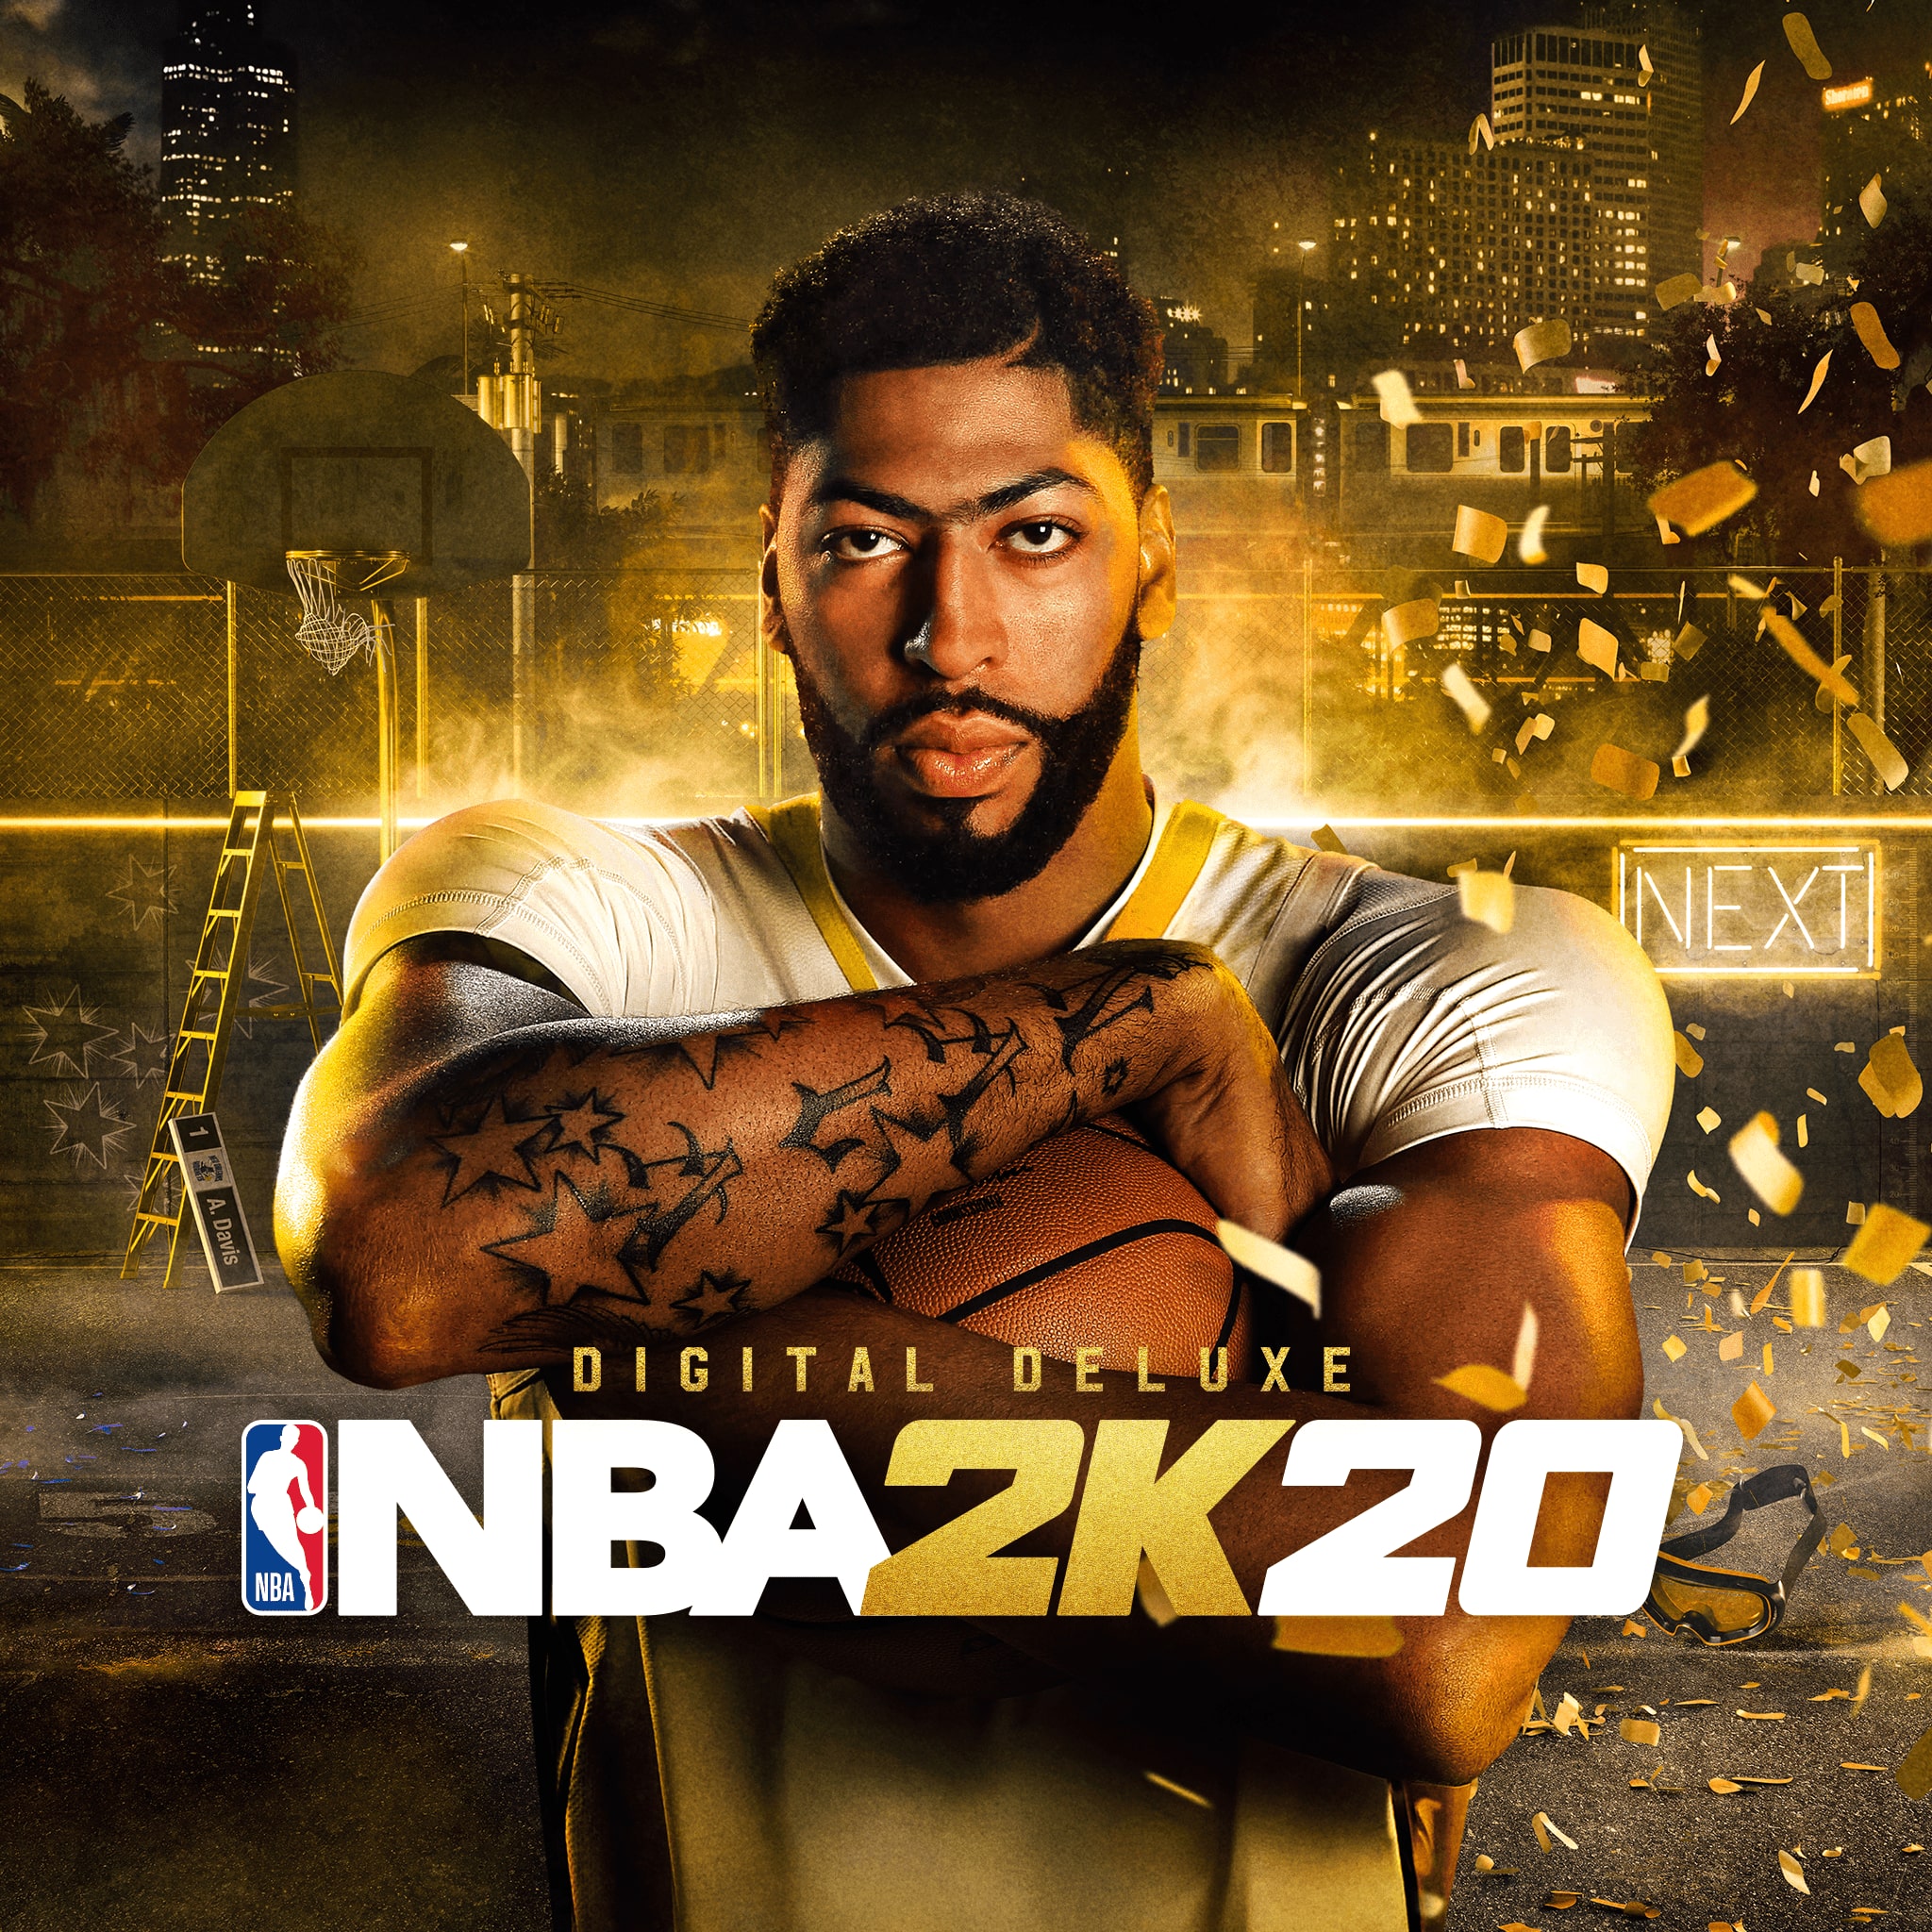 NBA 2K20 Digital Deluxe